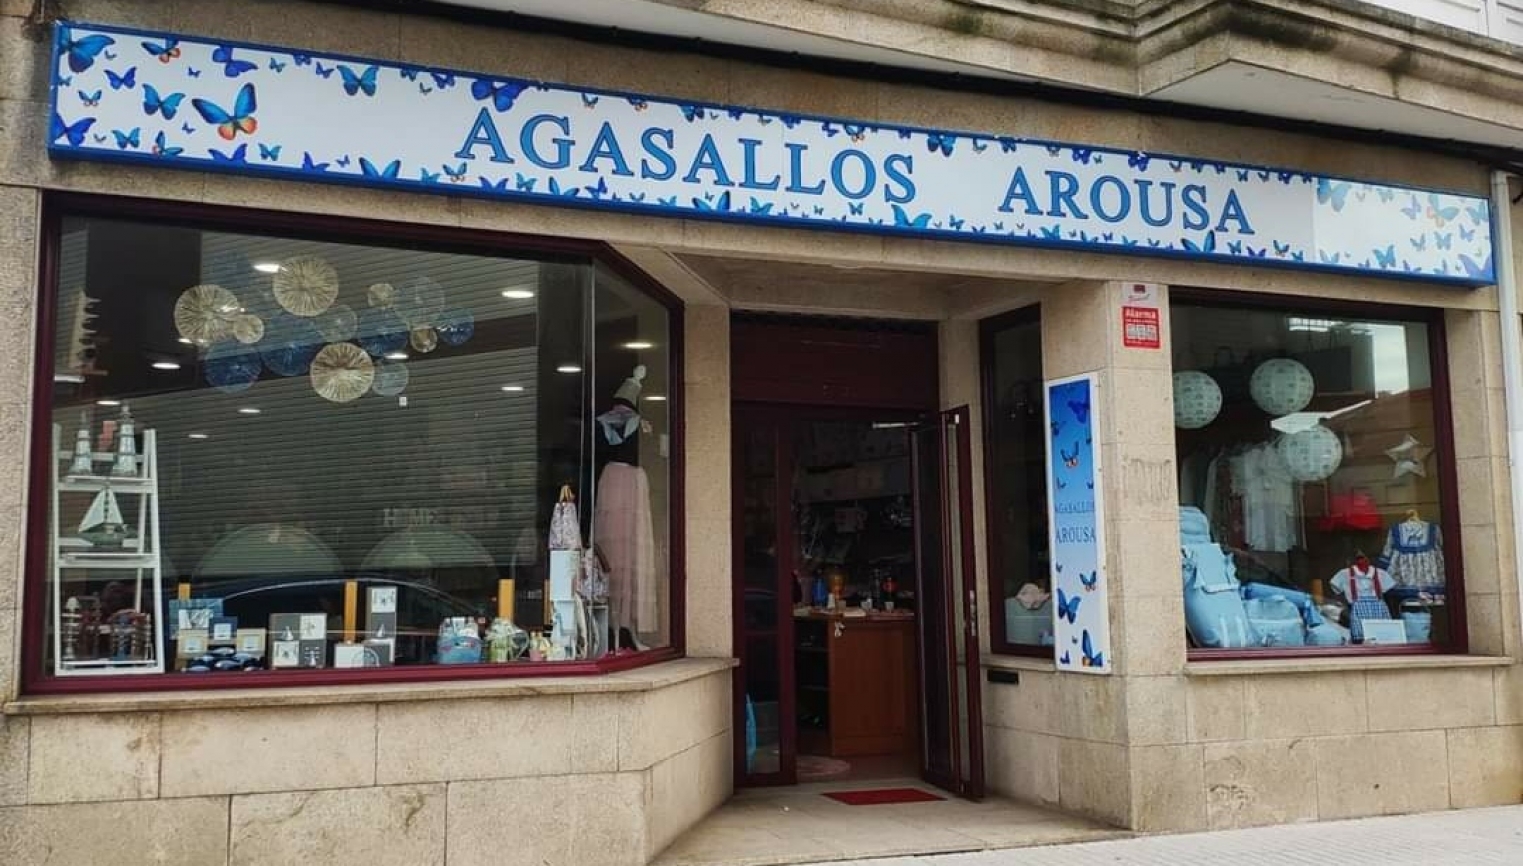 Agasallos Arousa - foto 1/1